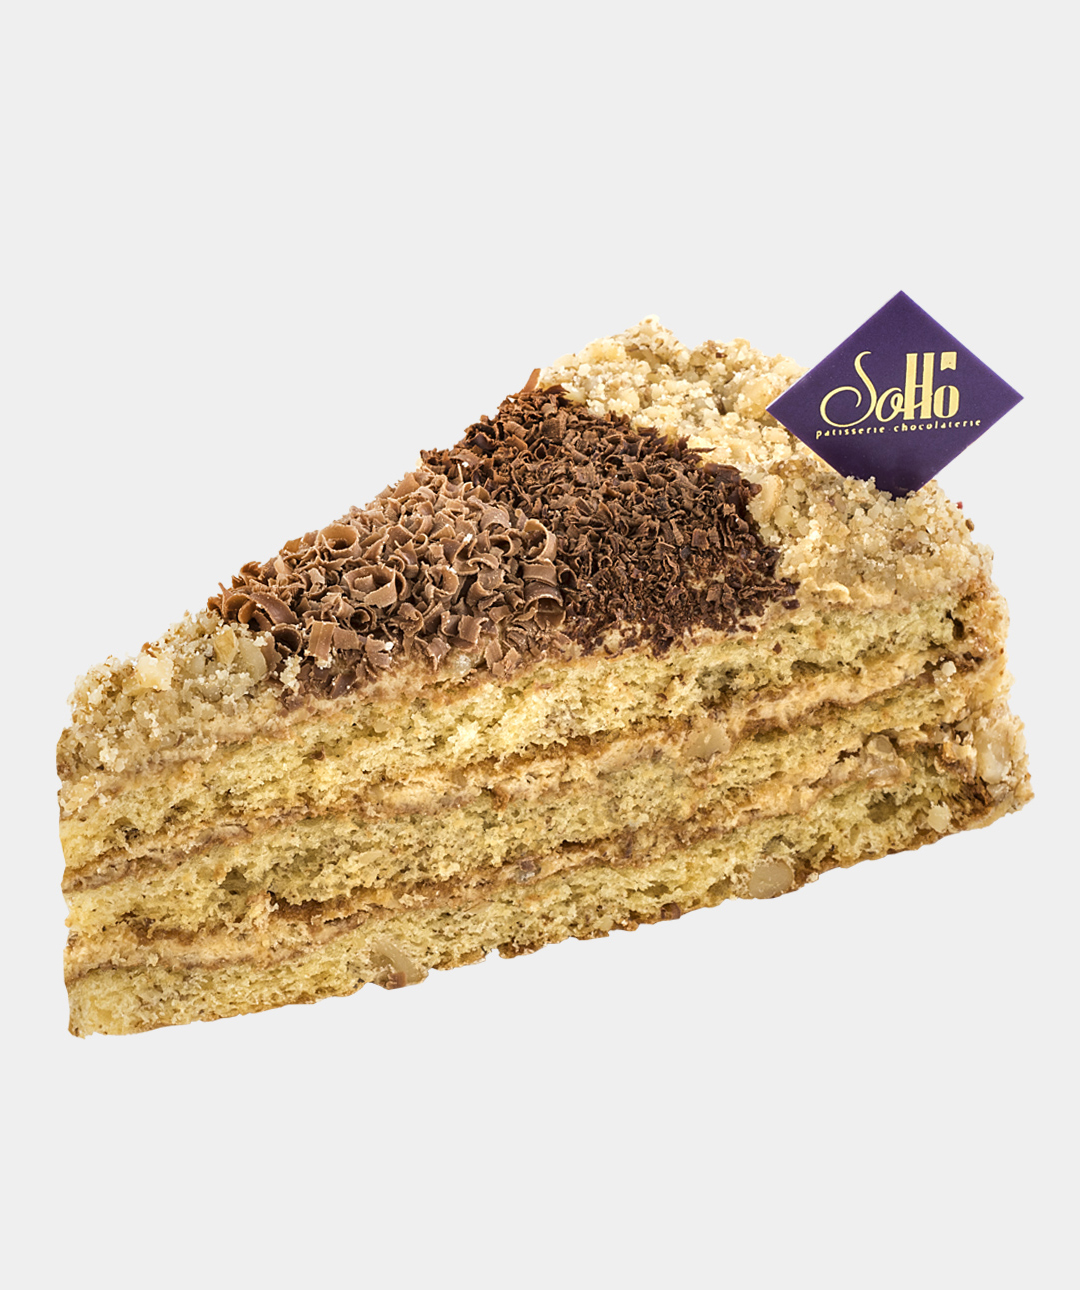 Cake «Soho» Ideal, small